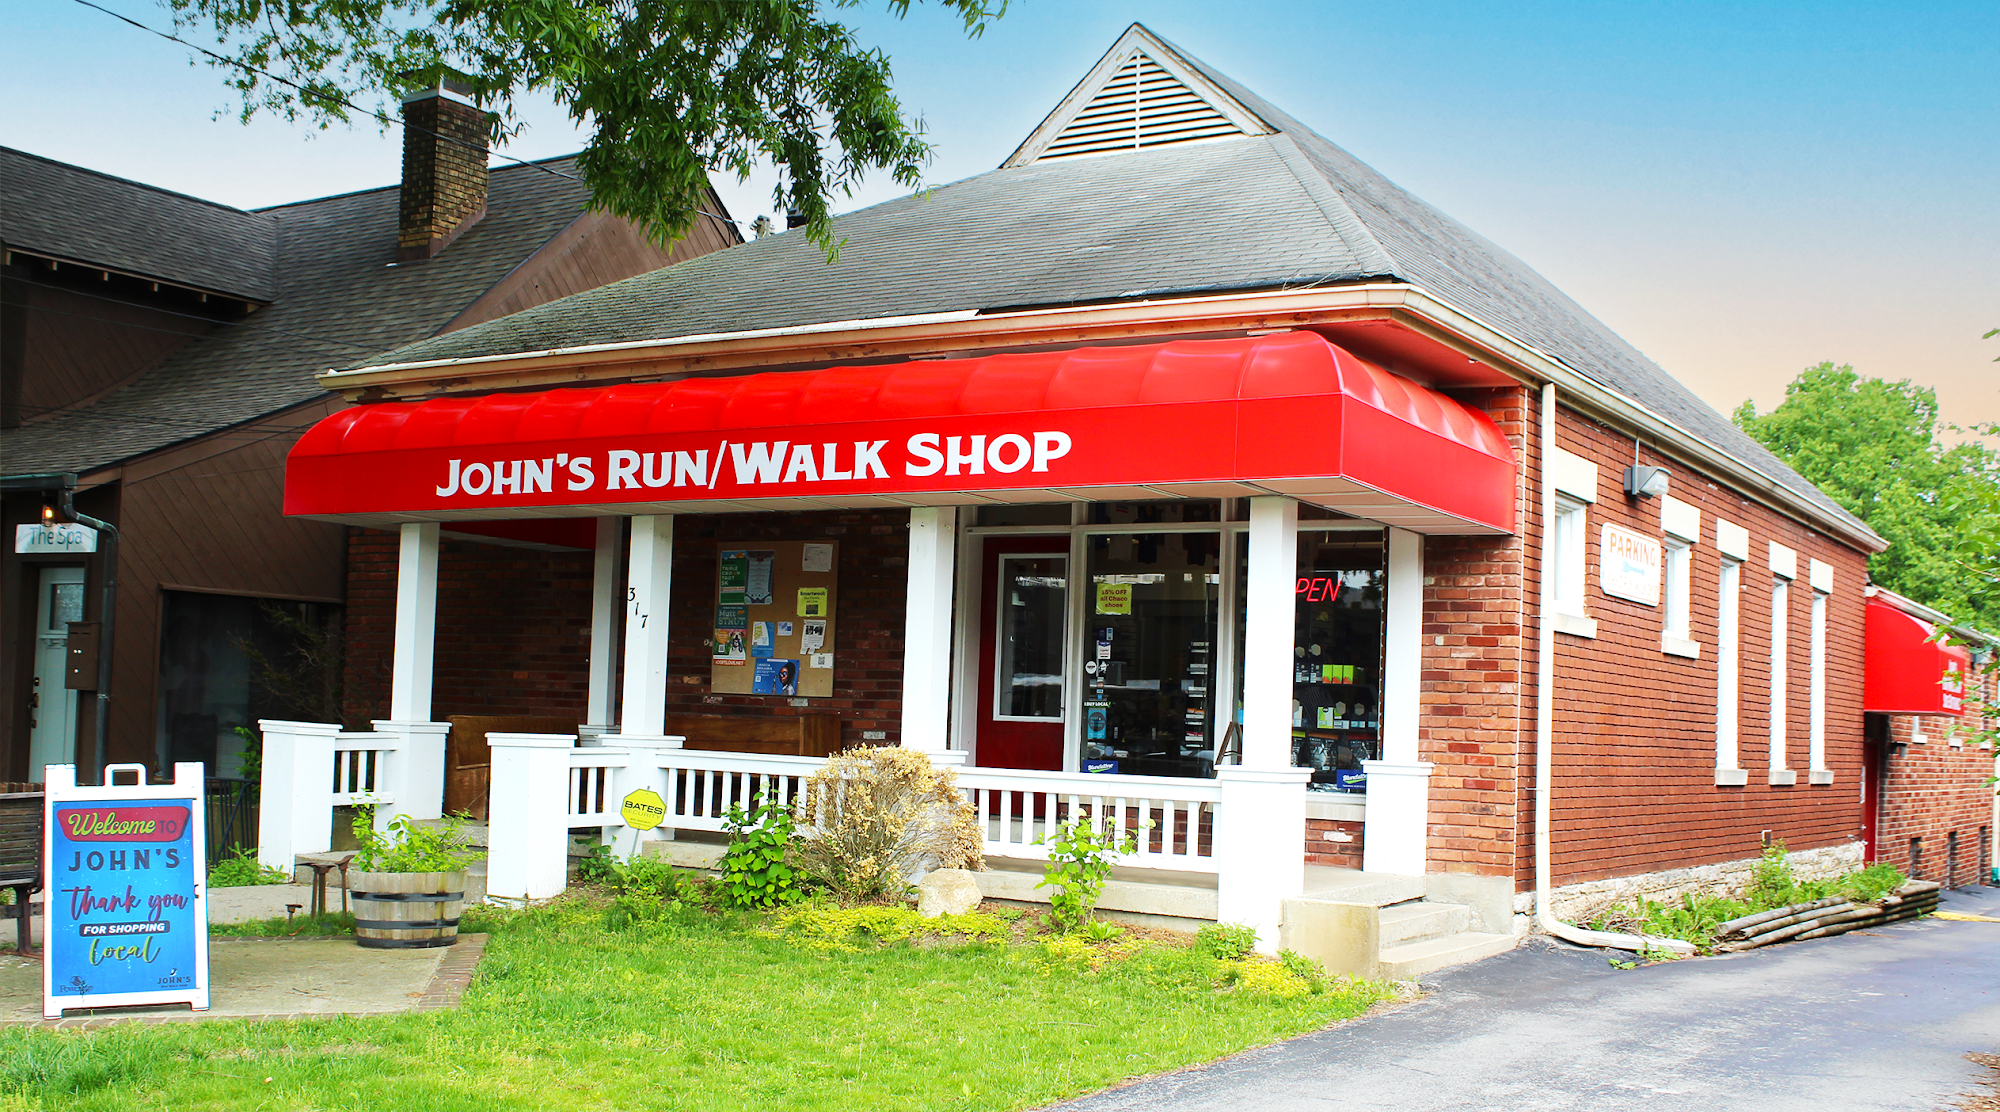 John's Run/Walk Shop